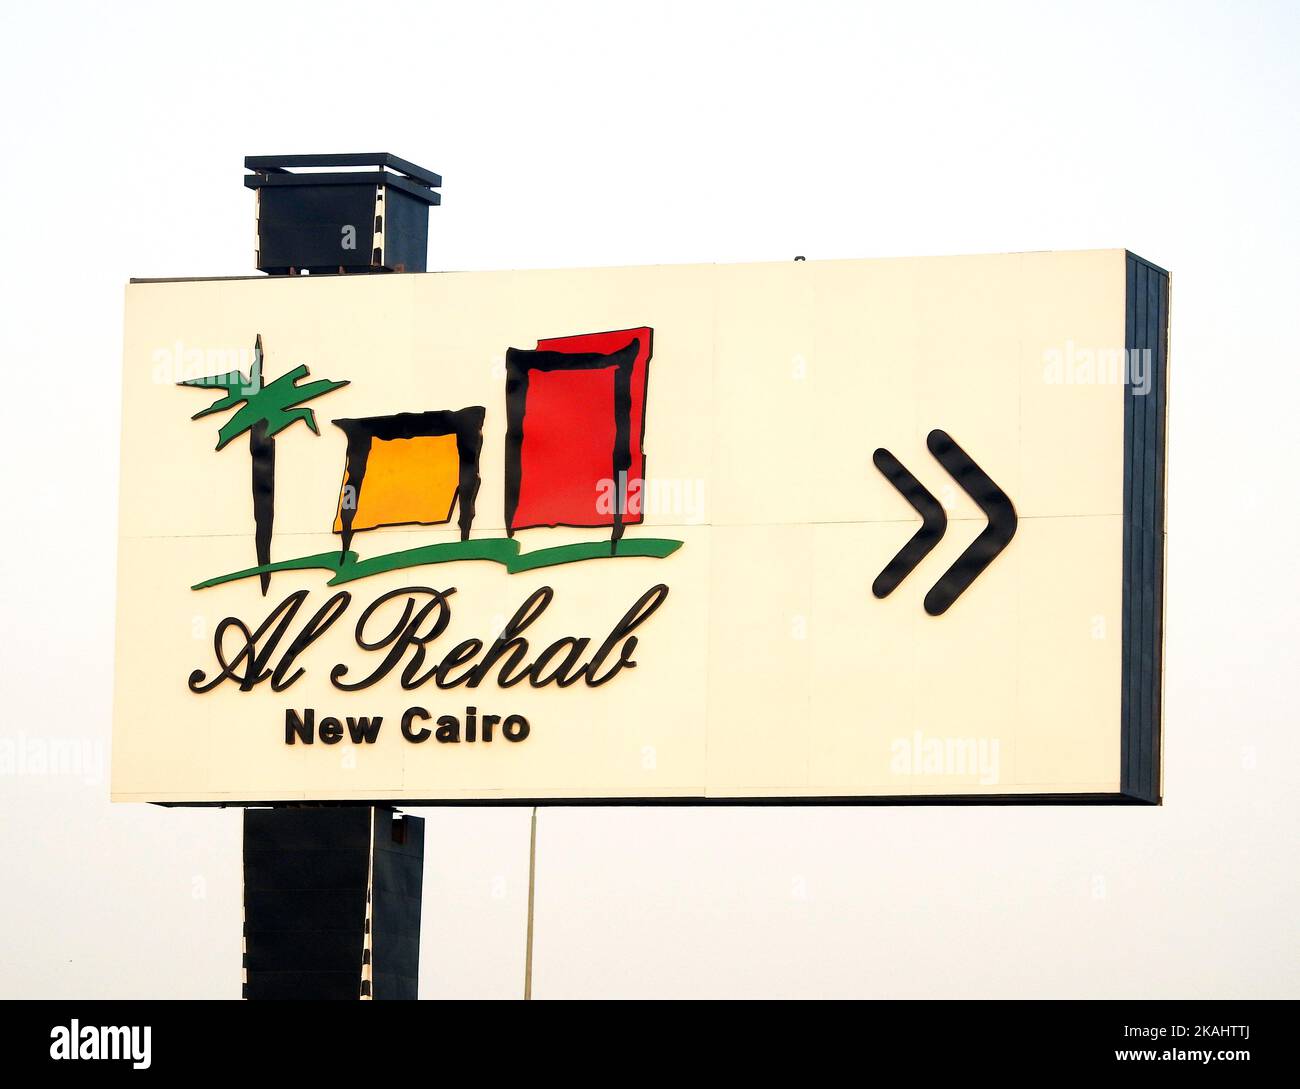 Kairo, Ägypten, September 29 2022: Al Rehab Stadt in New Cairo Richtungsschild von TMG Talaat Moustafa Group, einem der größten Konzerne Ägyptens, Stockfoto